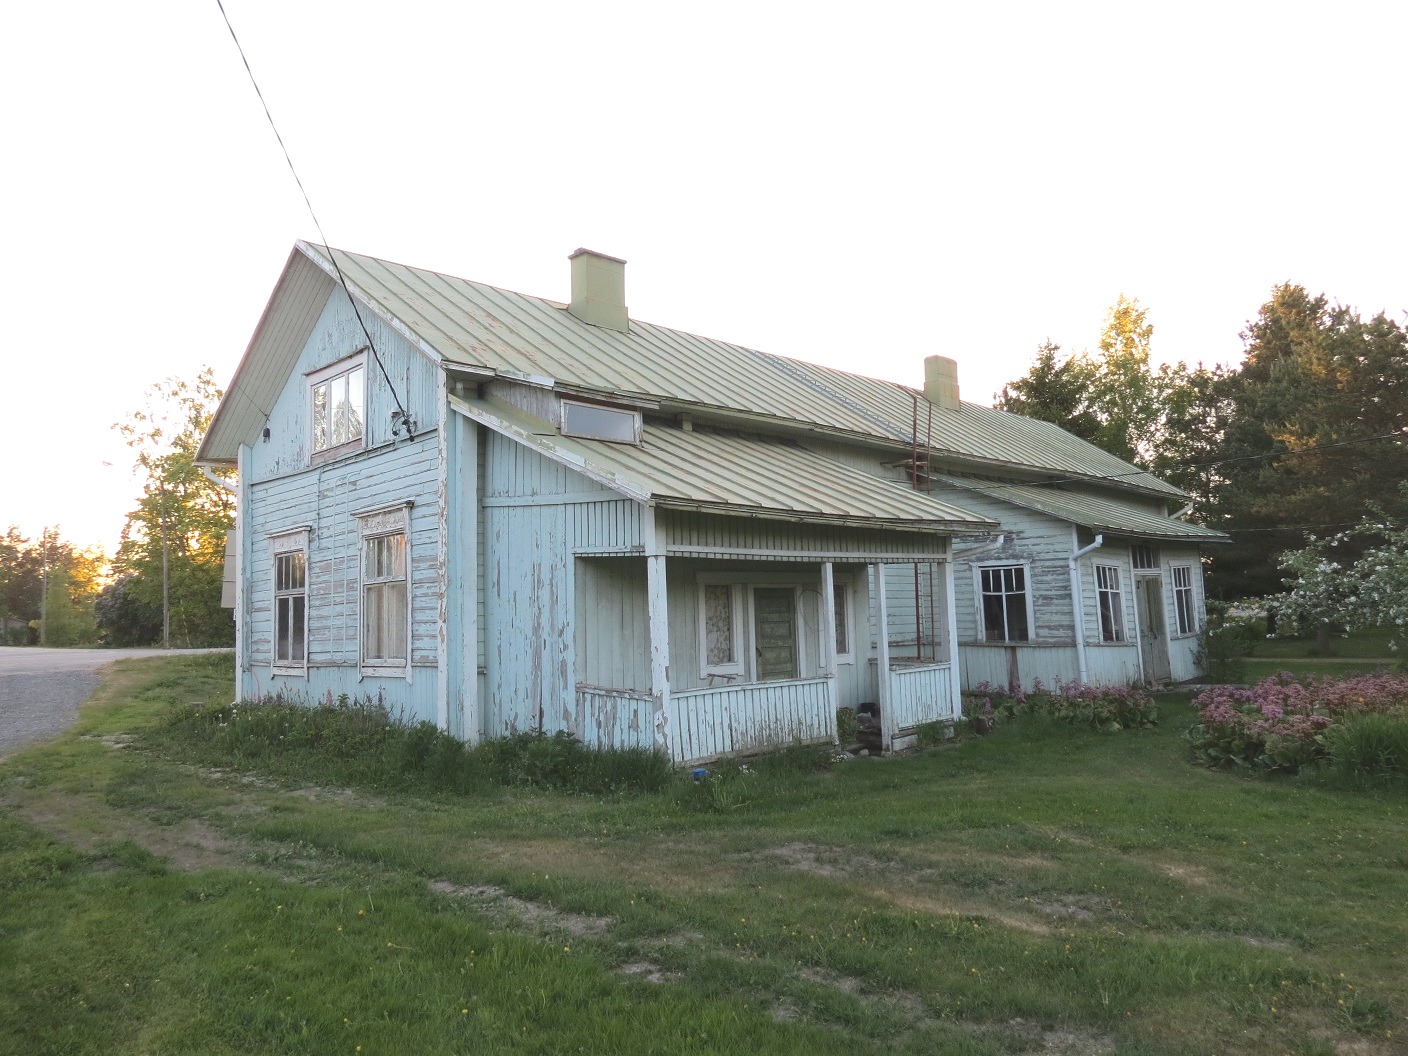 Hautaviitas gamla gård på Jossandt hemmanet byggdes troligen i slutet på 1800-talet och är idag i ganska dåligt skick. Fotot från 2018.